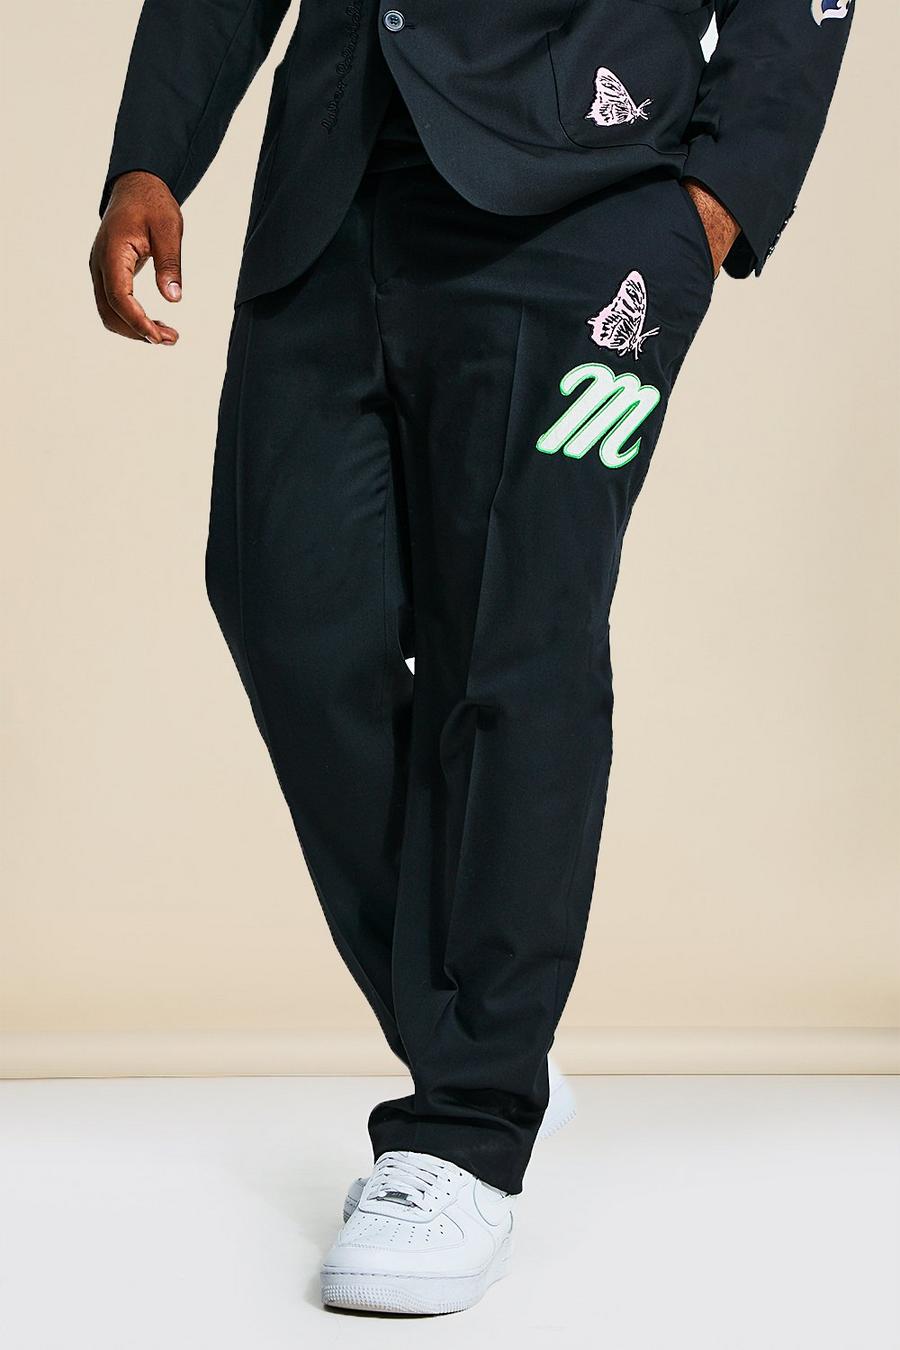 שחור nero מכנסי חליפה בגזרת סקיני בסגנון נבחרת ספורט מידות גדולות  image number 1